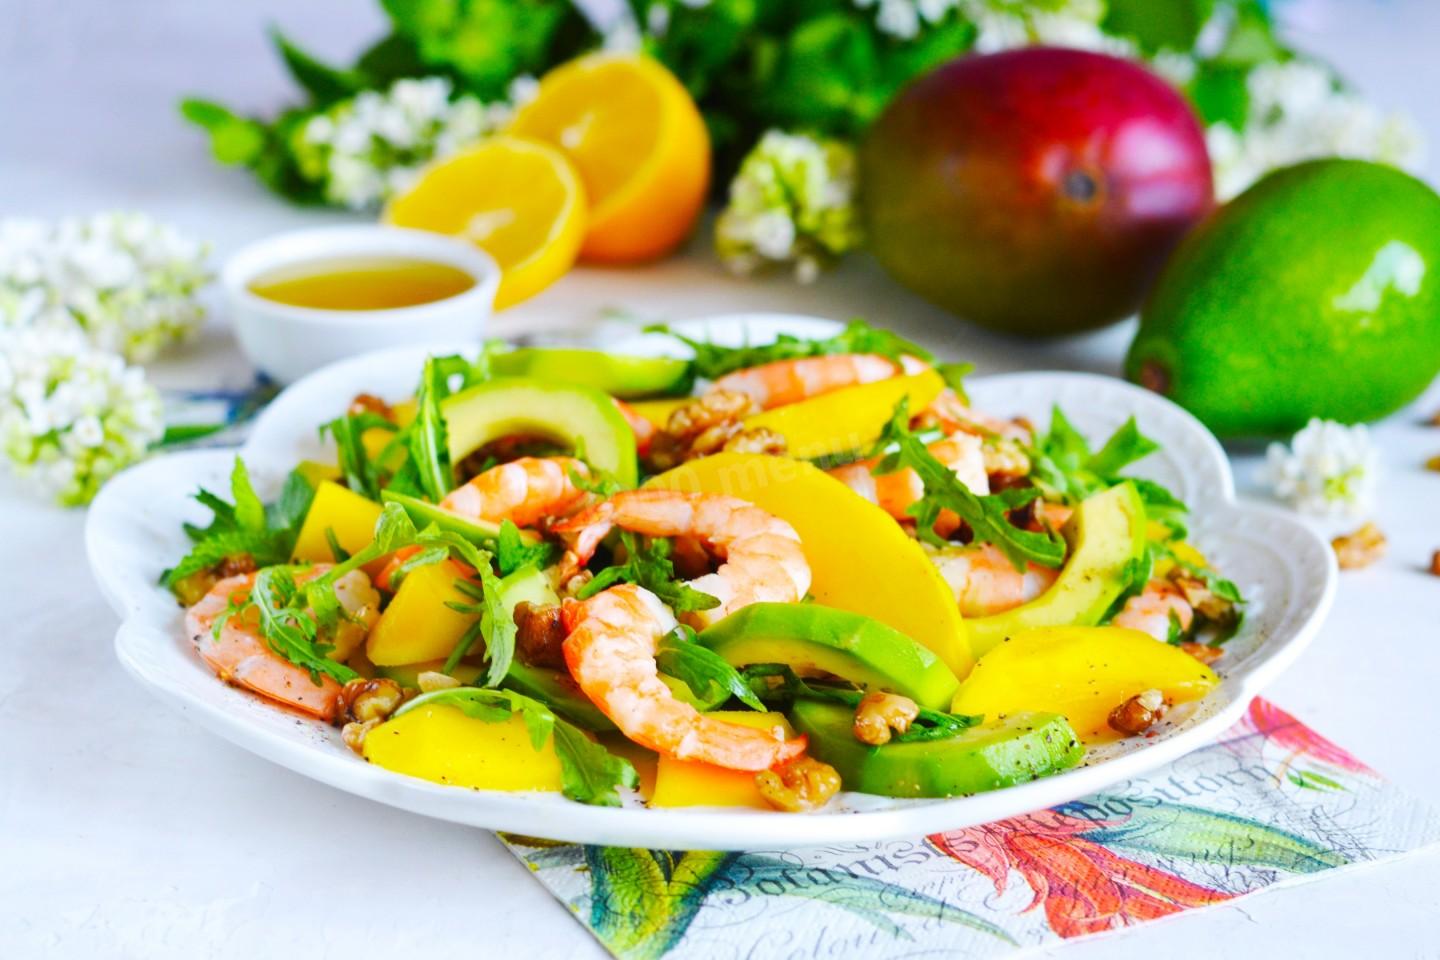 Salad with shrimp, mango, avocado and arugula